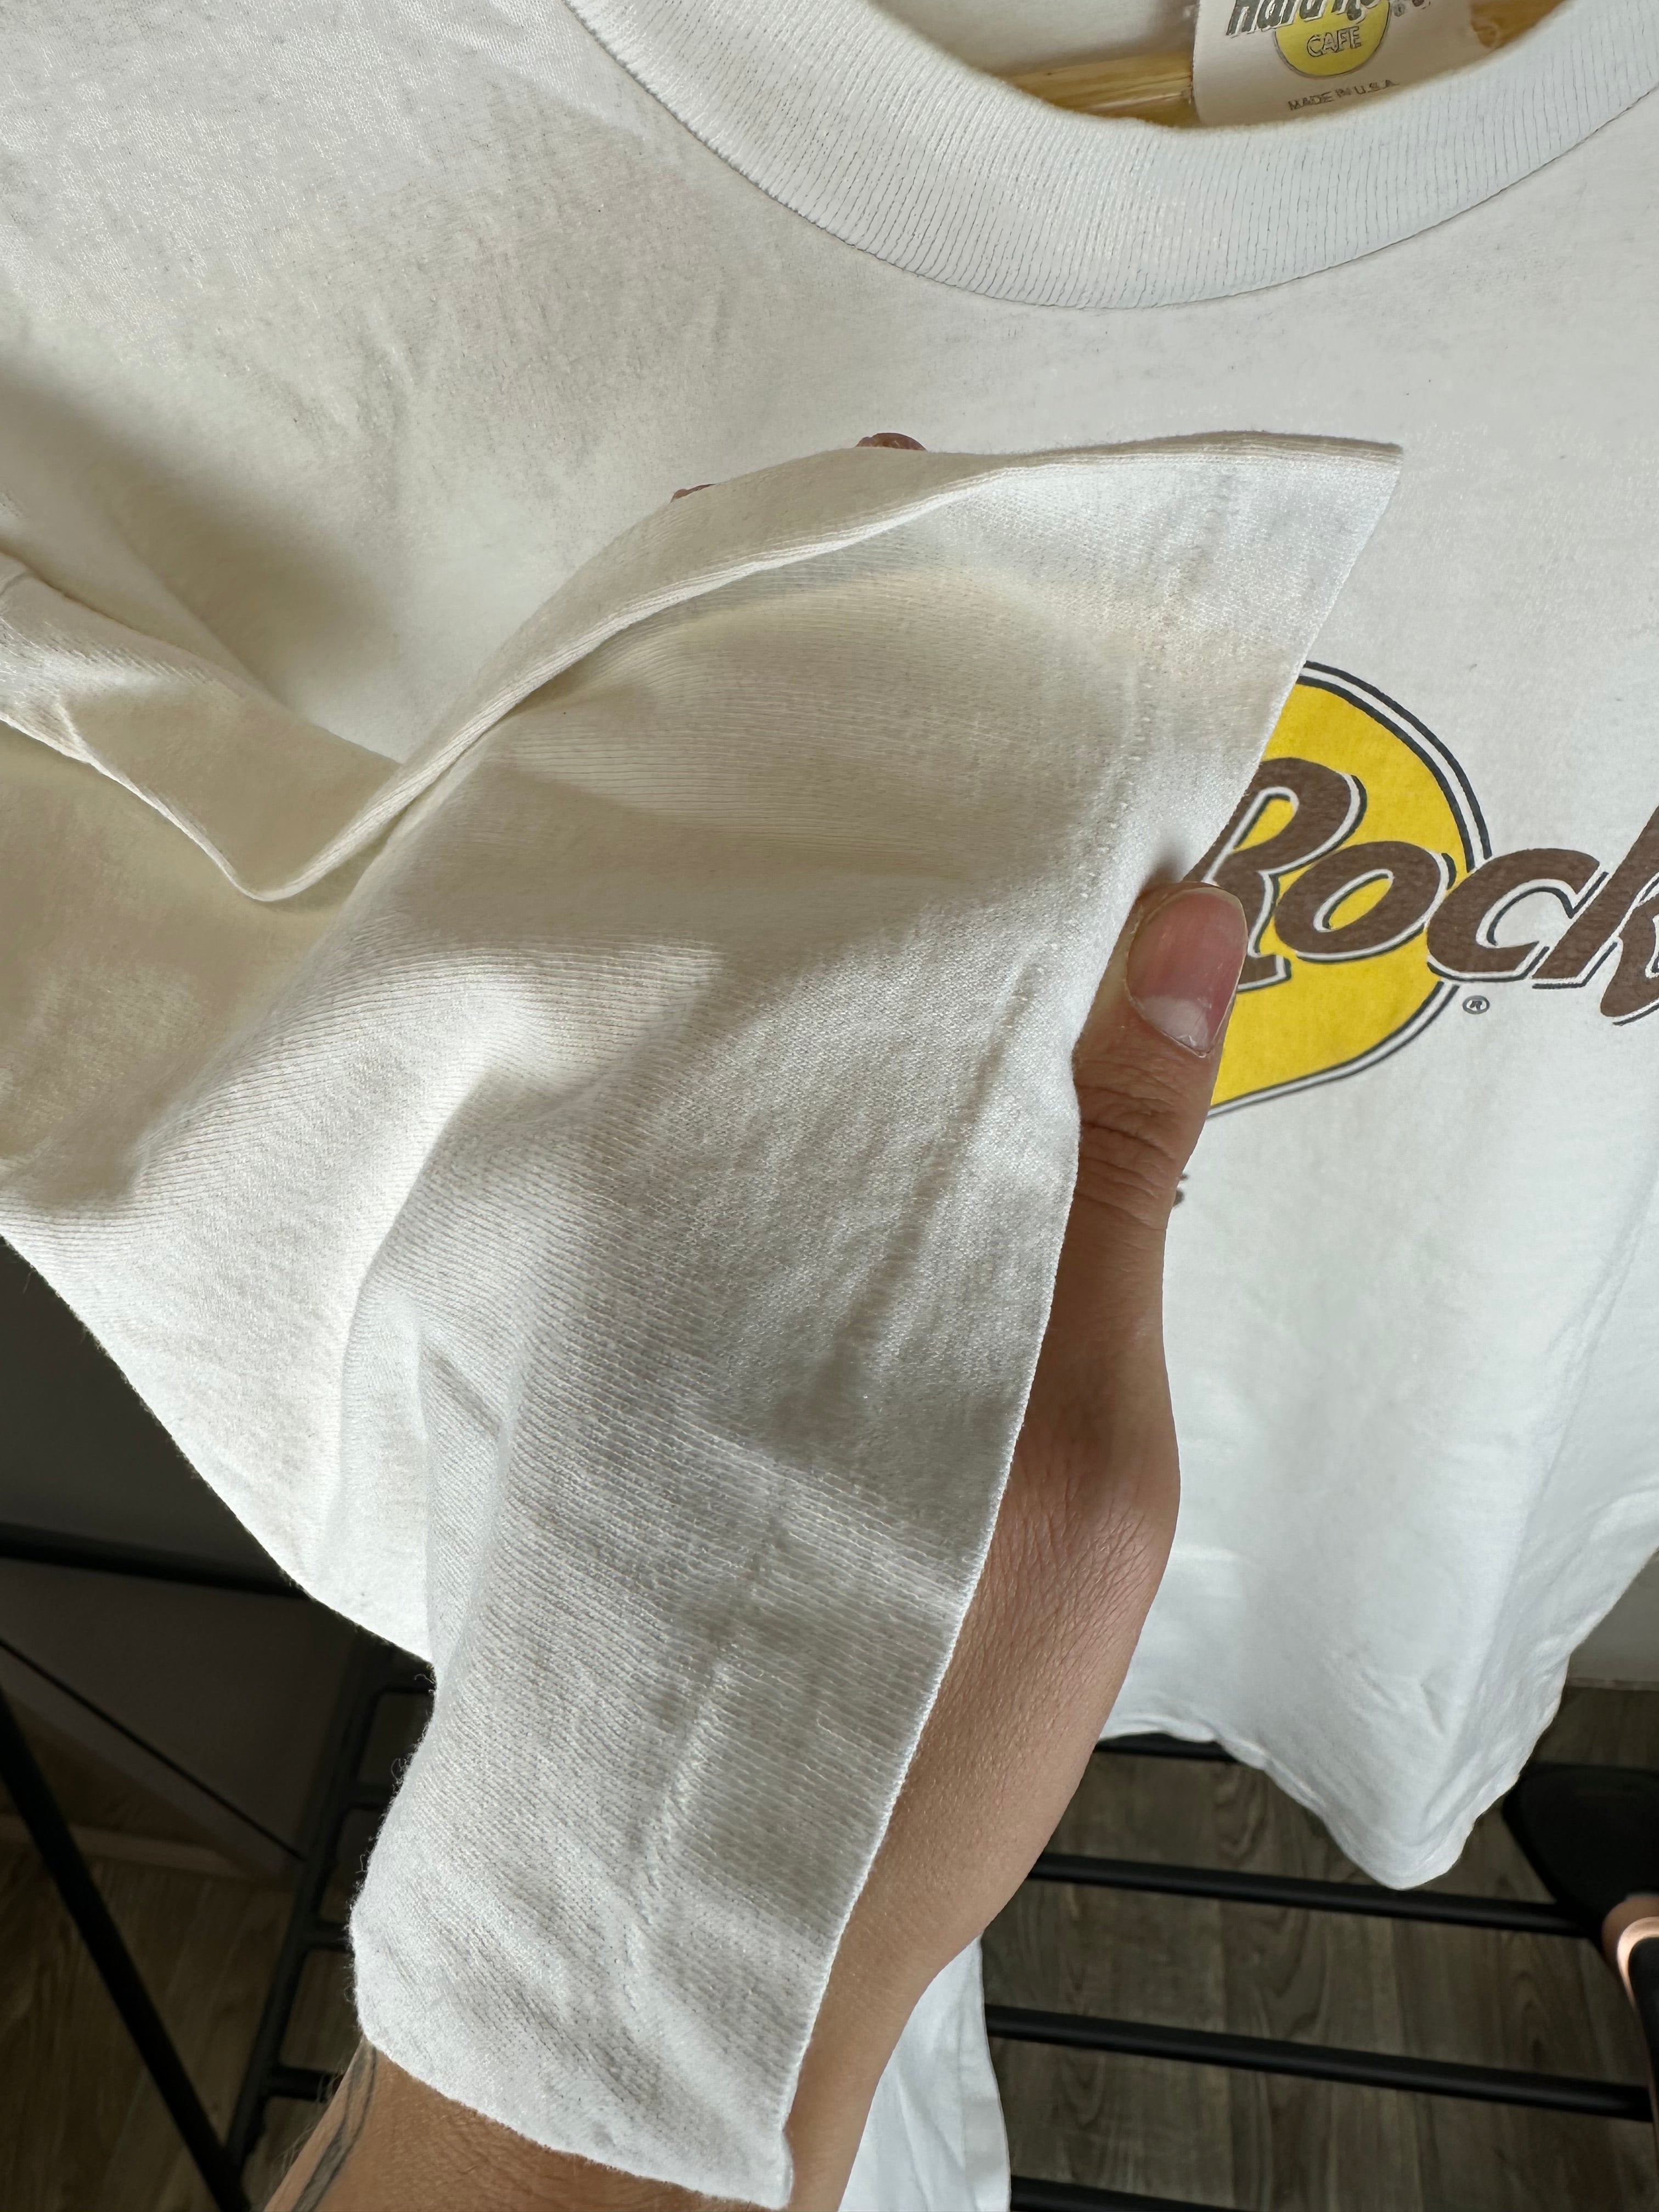 Vintage Hard Rock Cafe - T-shirt size XL